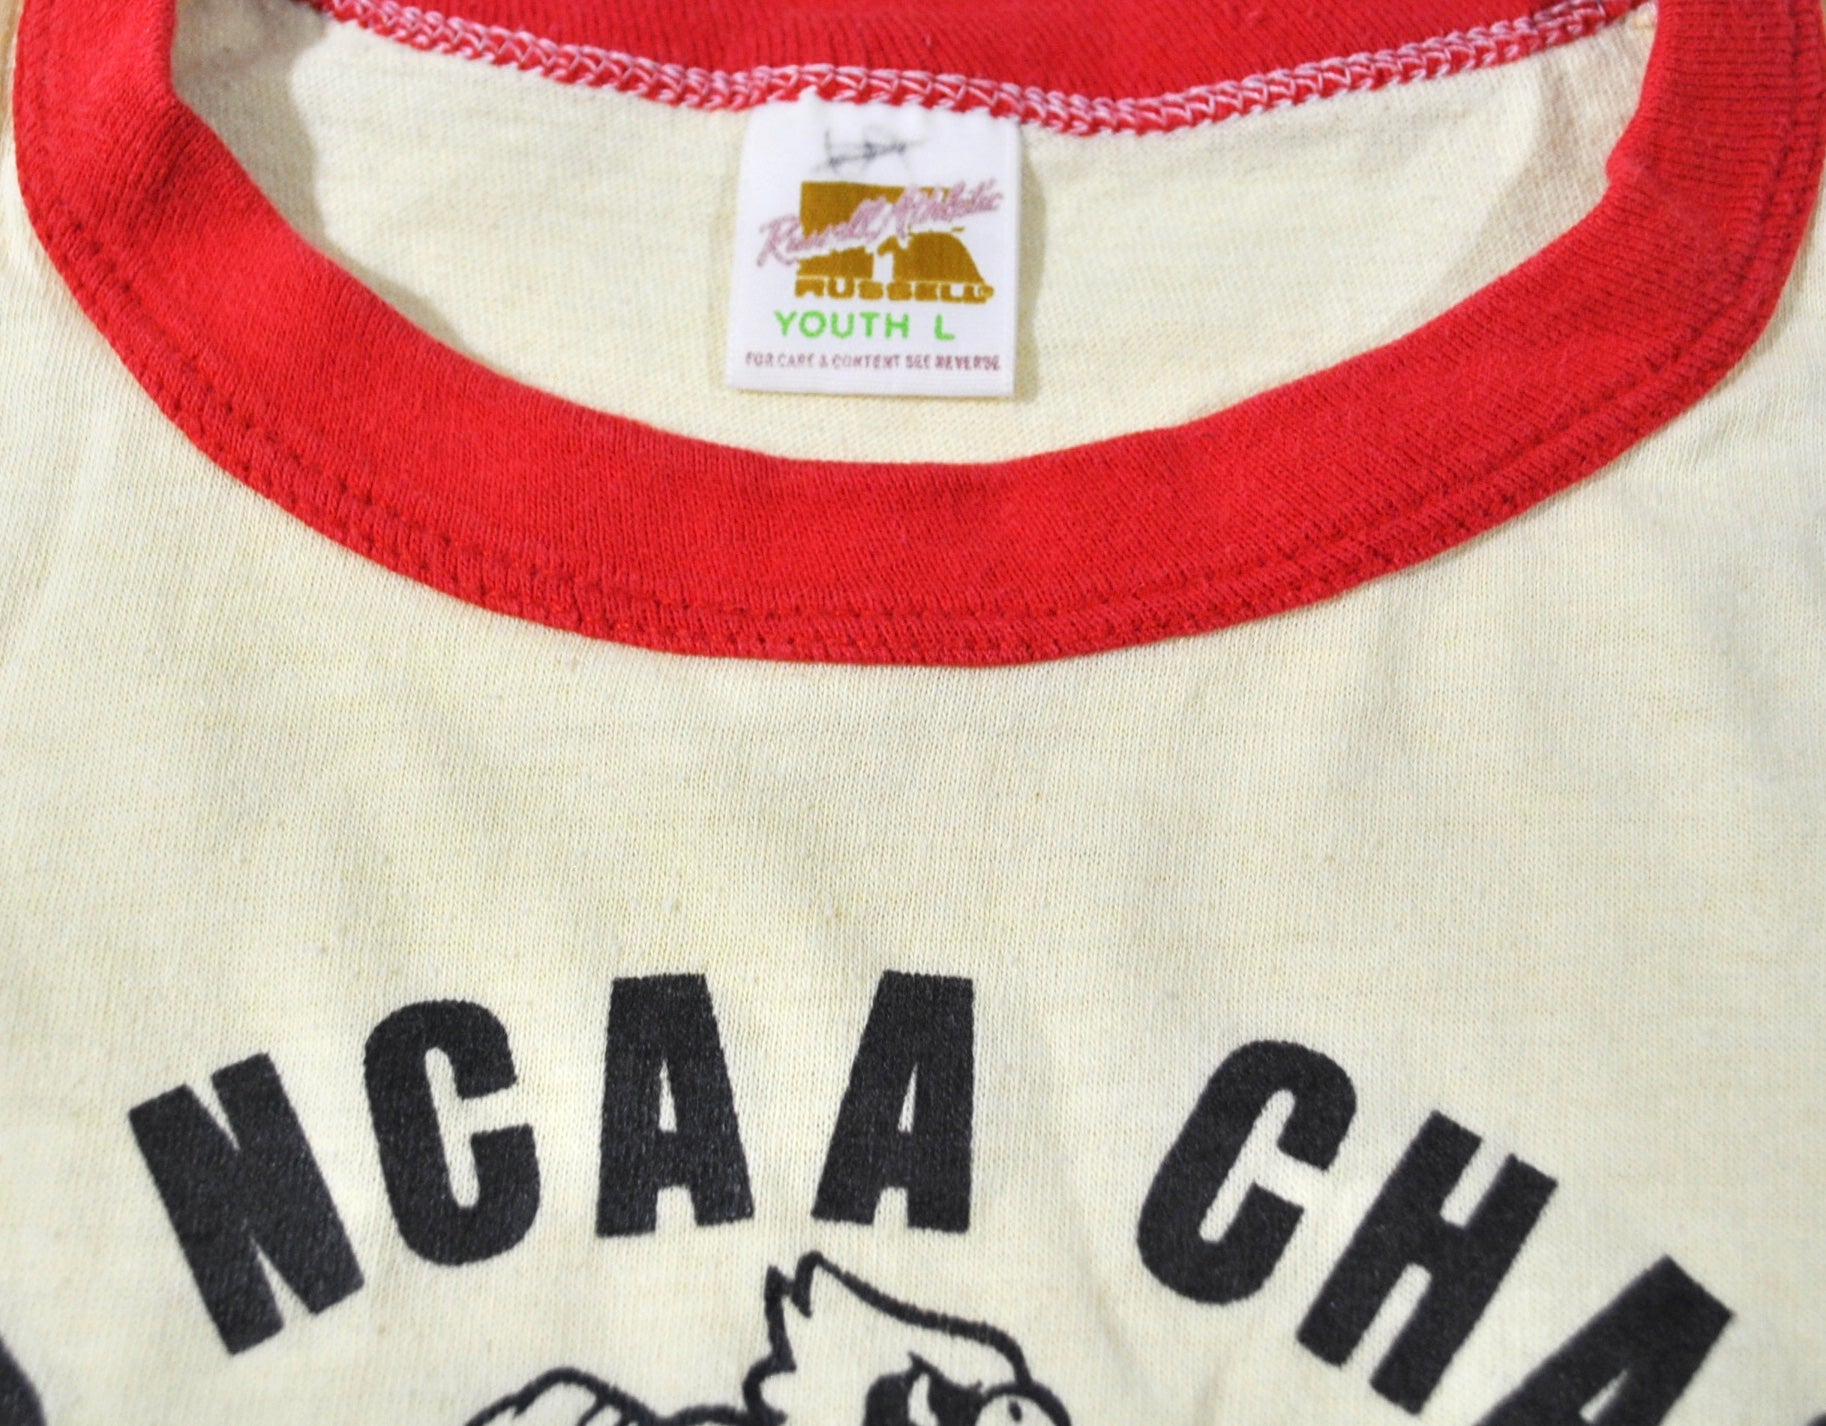 Vintage 1980 Louisville Cardinals National Champions T-Shirt – Continuous  Vintage